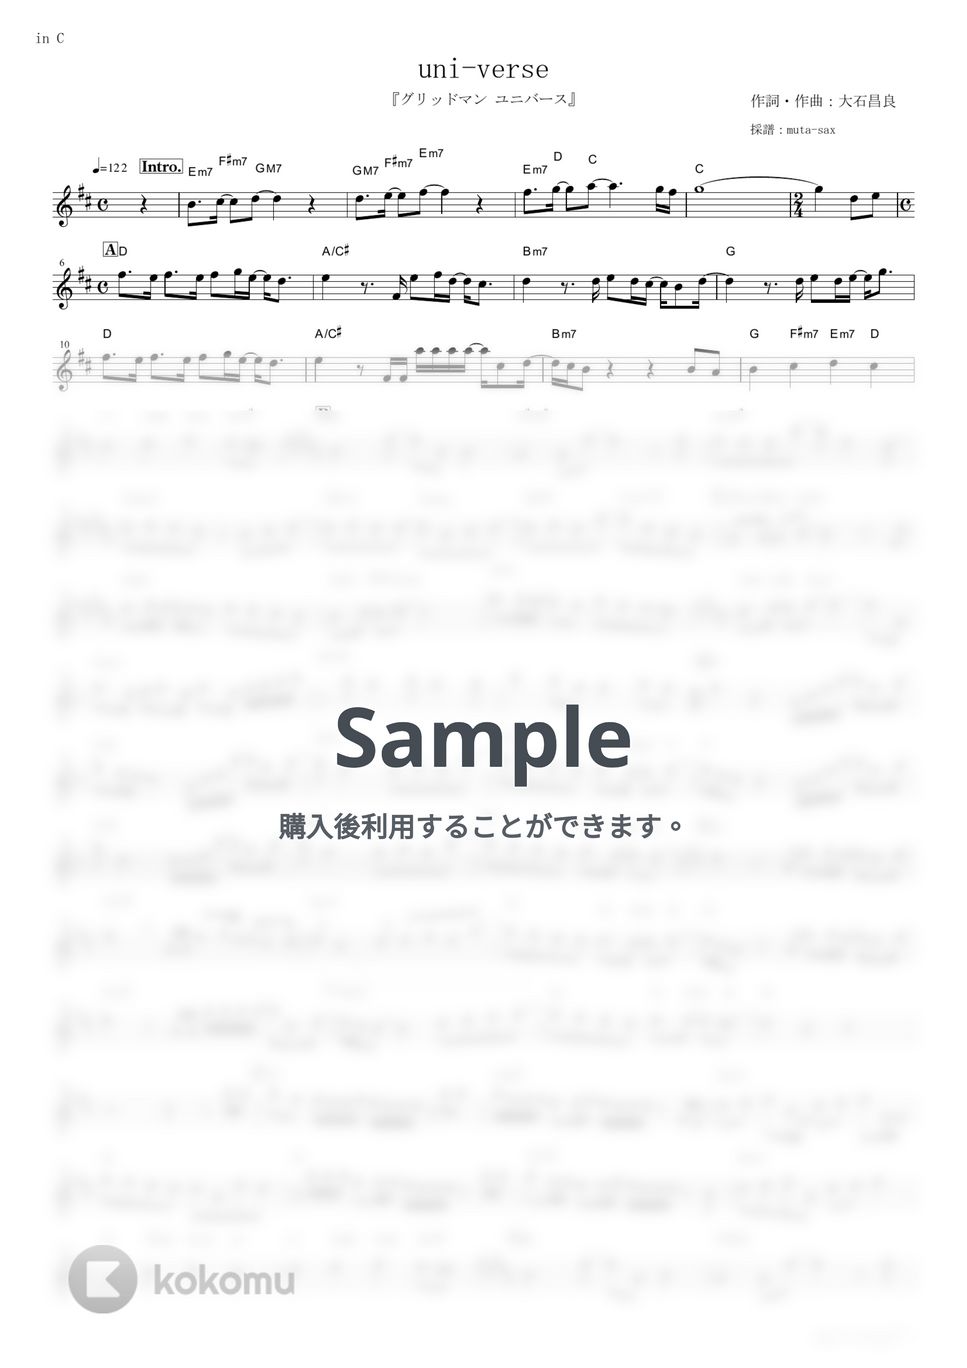 オーイシマサヨシ - uni-verse (『グリッドマン ユニバース』 / in C) by muta-sax